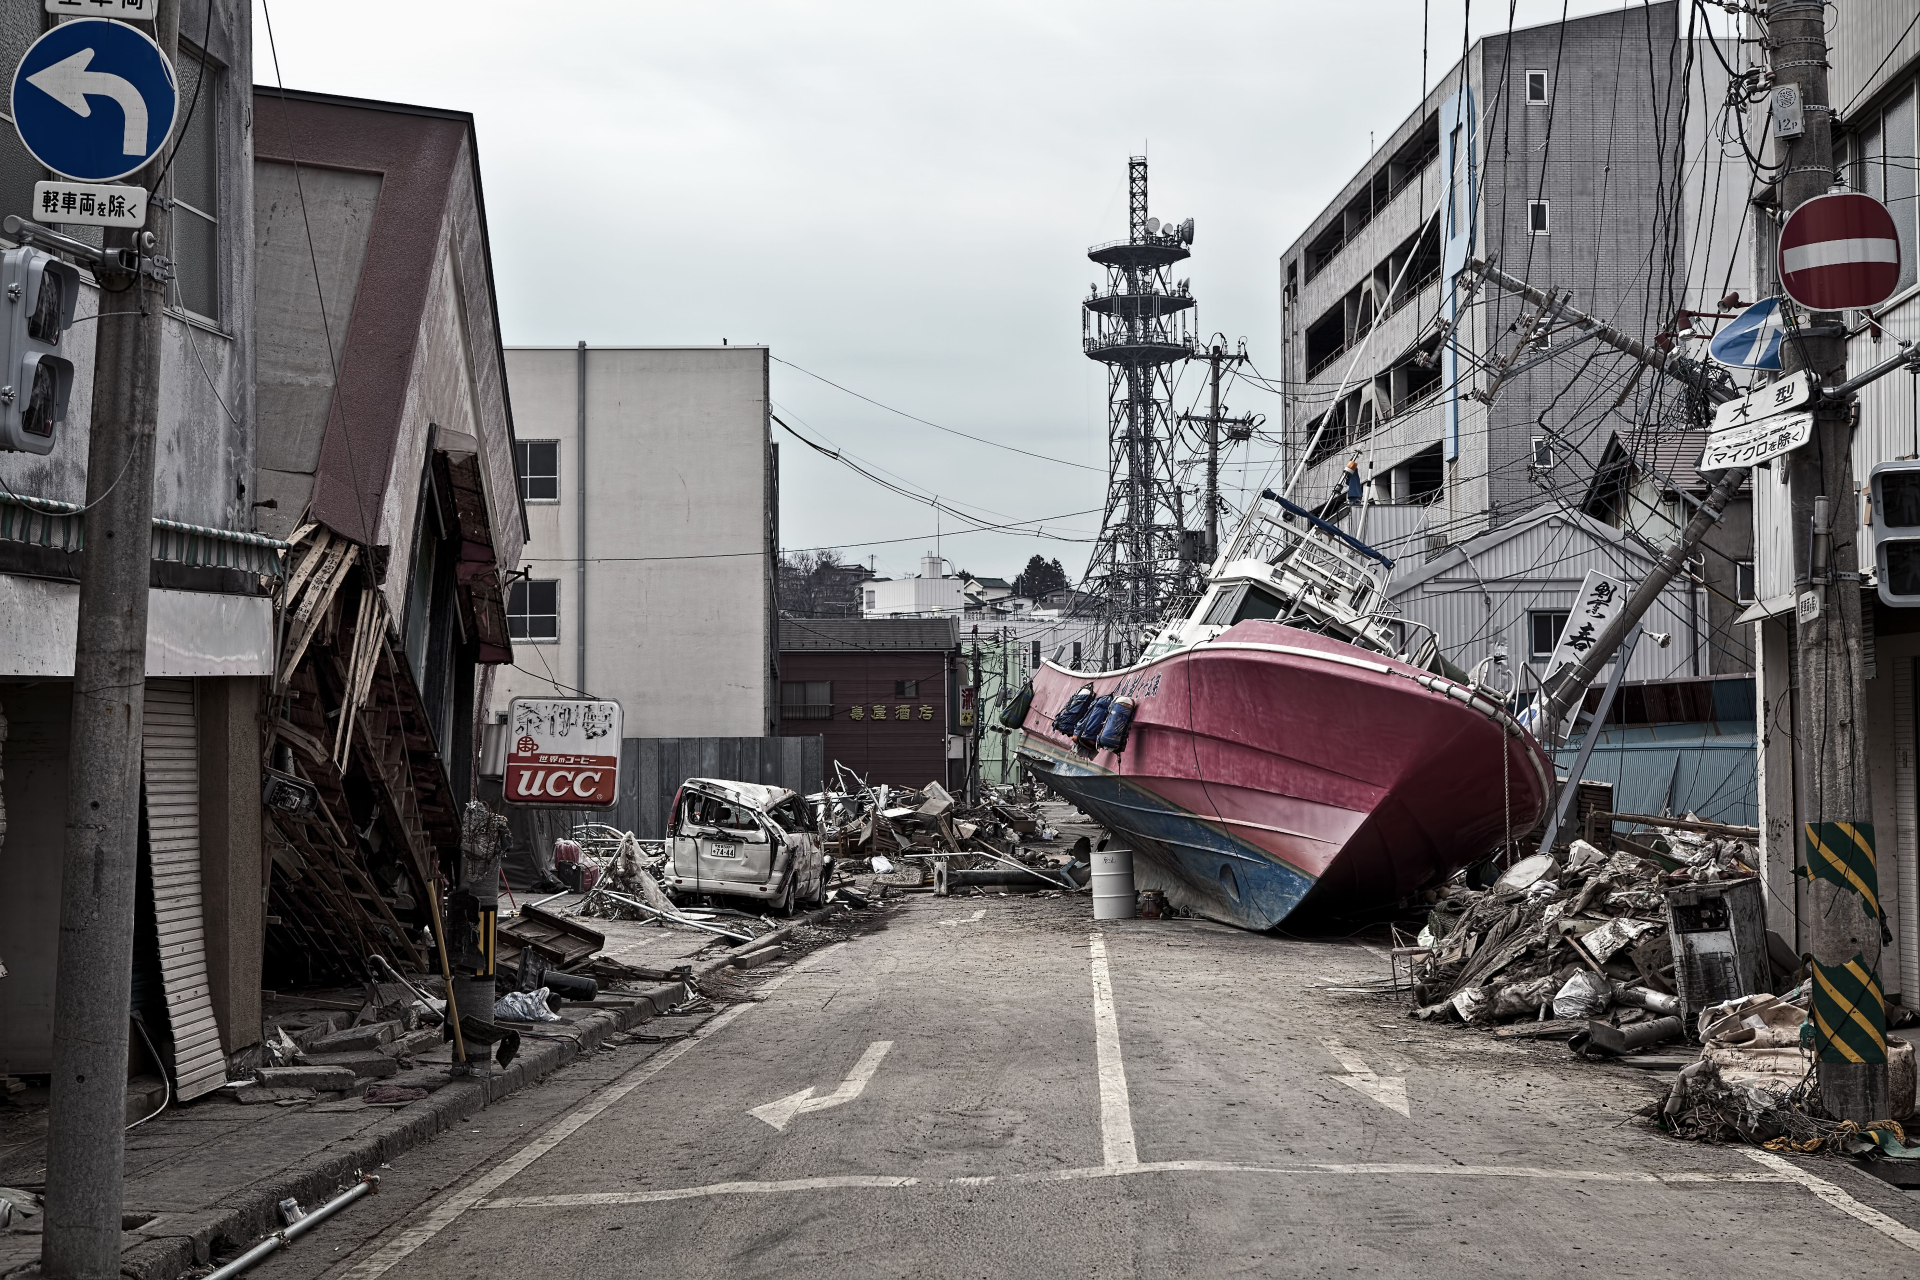 13 години след ужаса във Фукушима 2520 души...